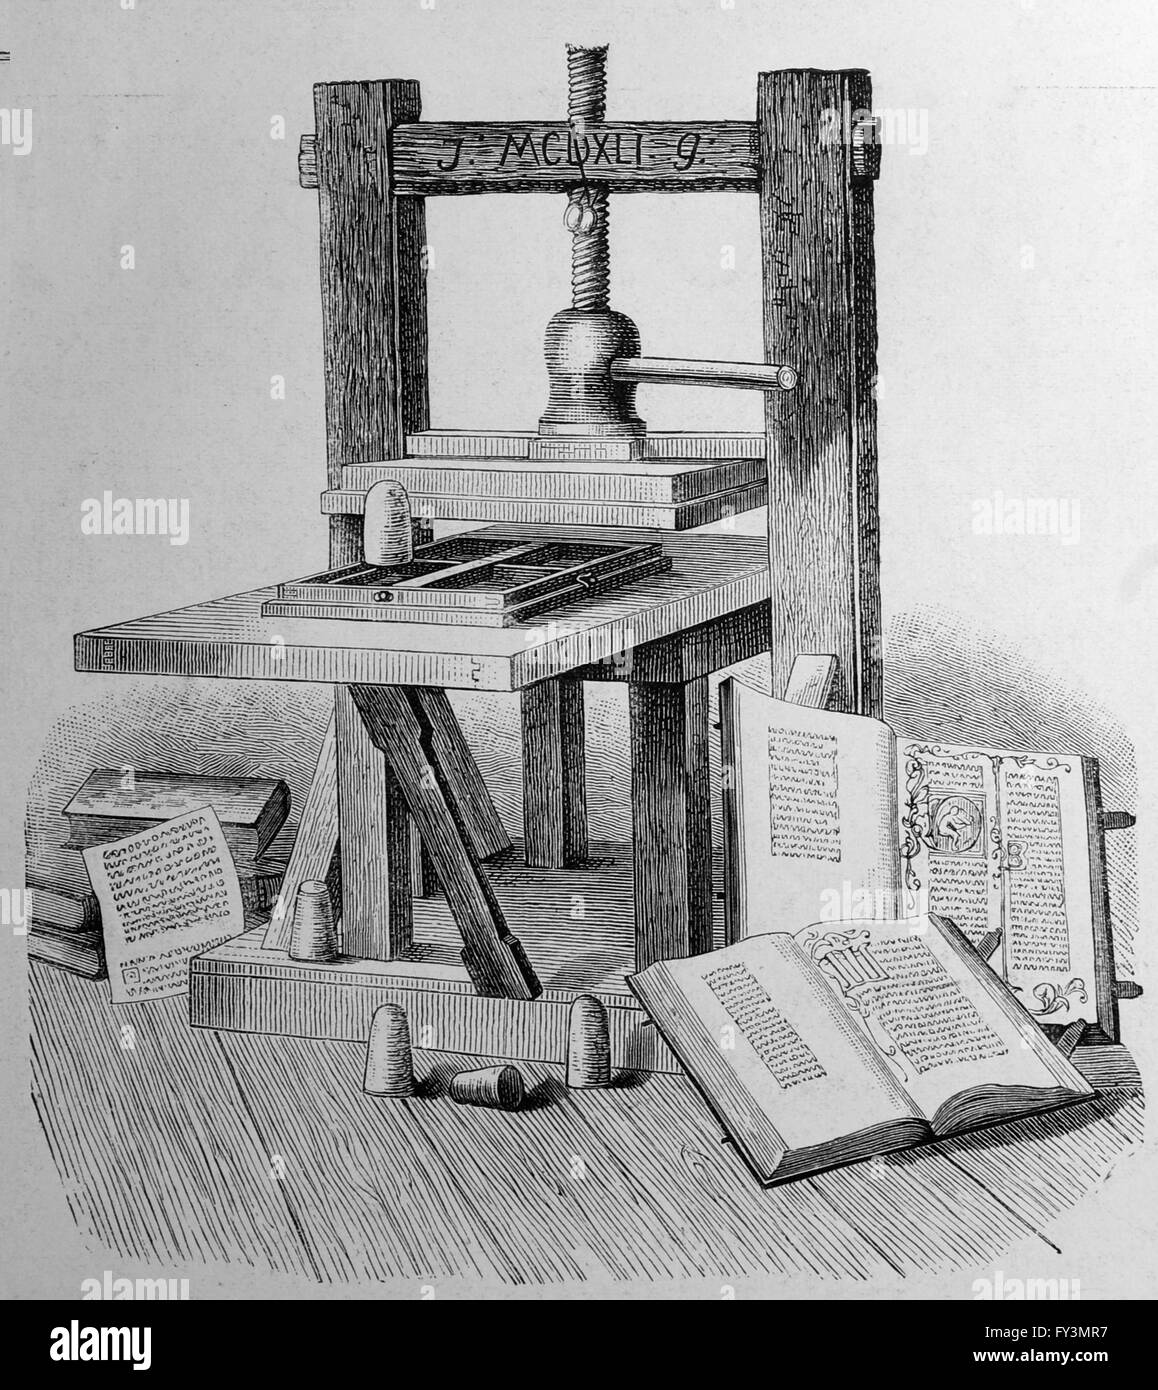 Pulse priting Gutenberg. Europa. Grabado por Ilustracion artistica, 1885. Foto de stock